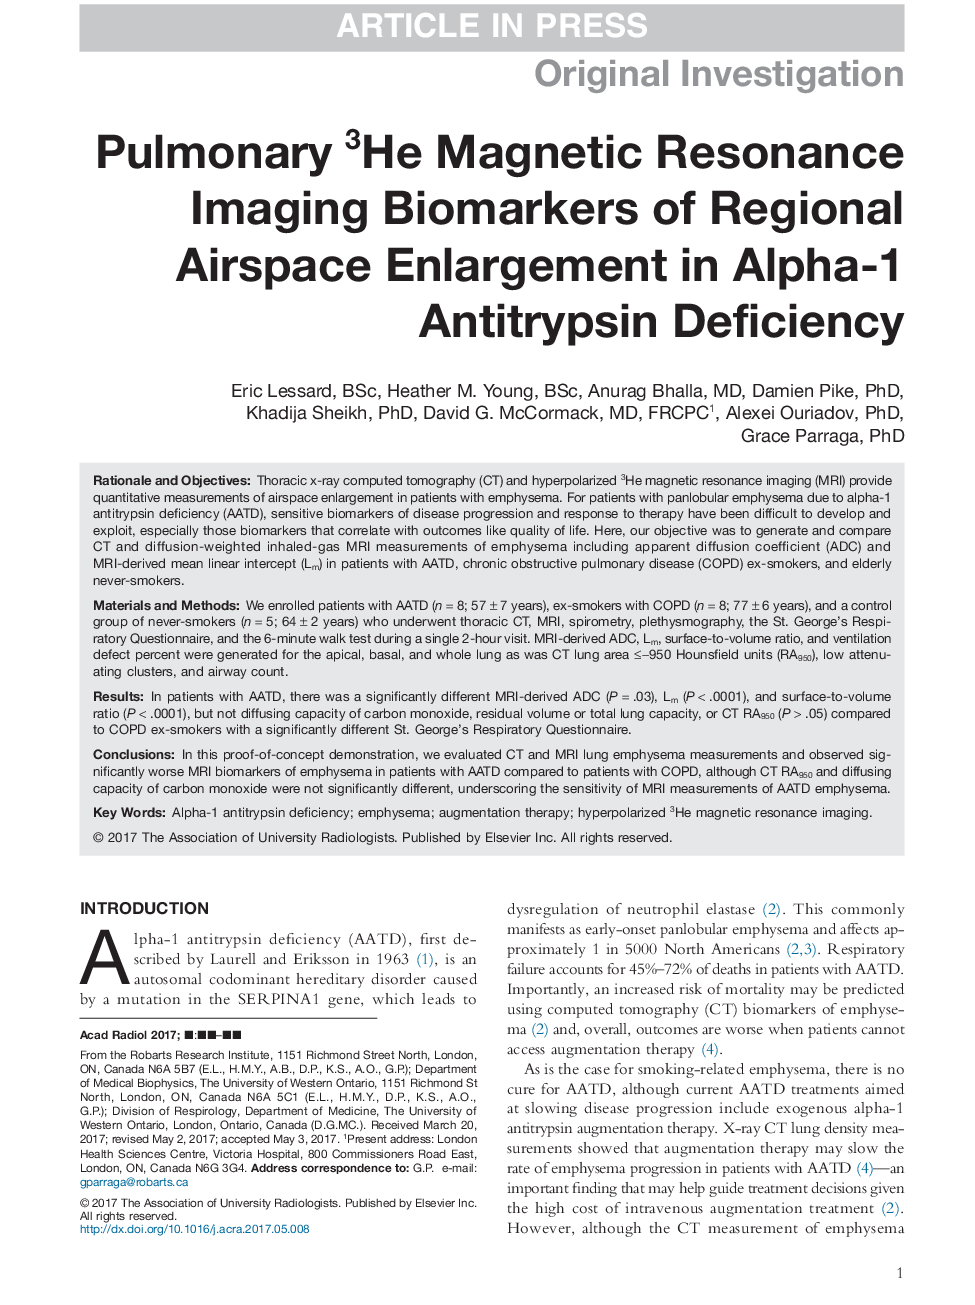 Pulmonary 3He Magnetic Resonance Imaging Biomarkers of Regional Airspace Enlargement in Alpha-1 Antitrypsin Deficiency